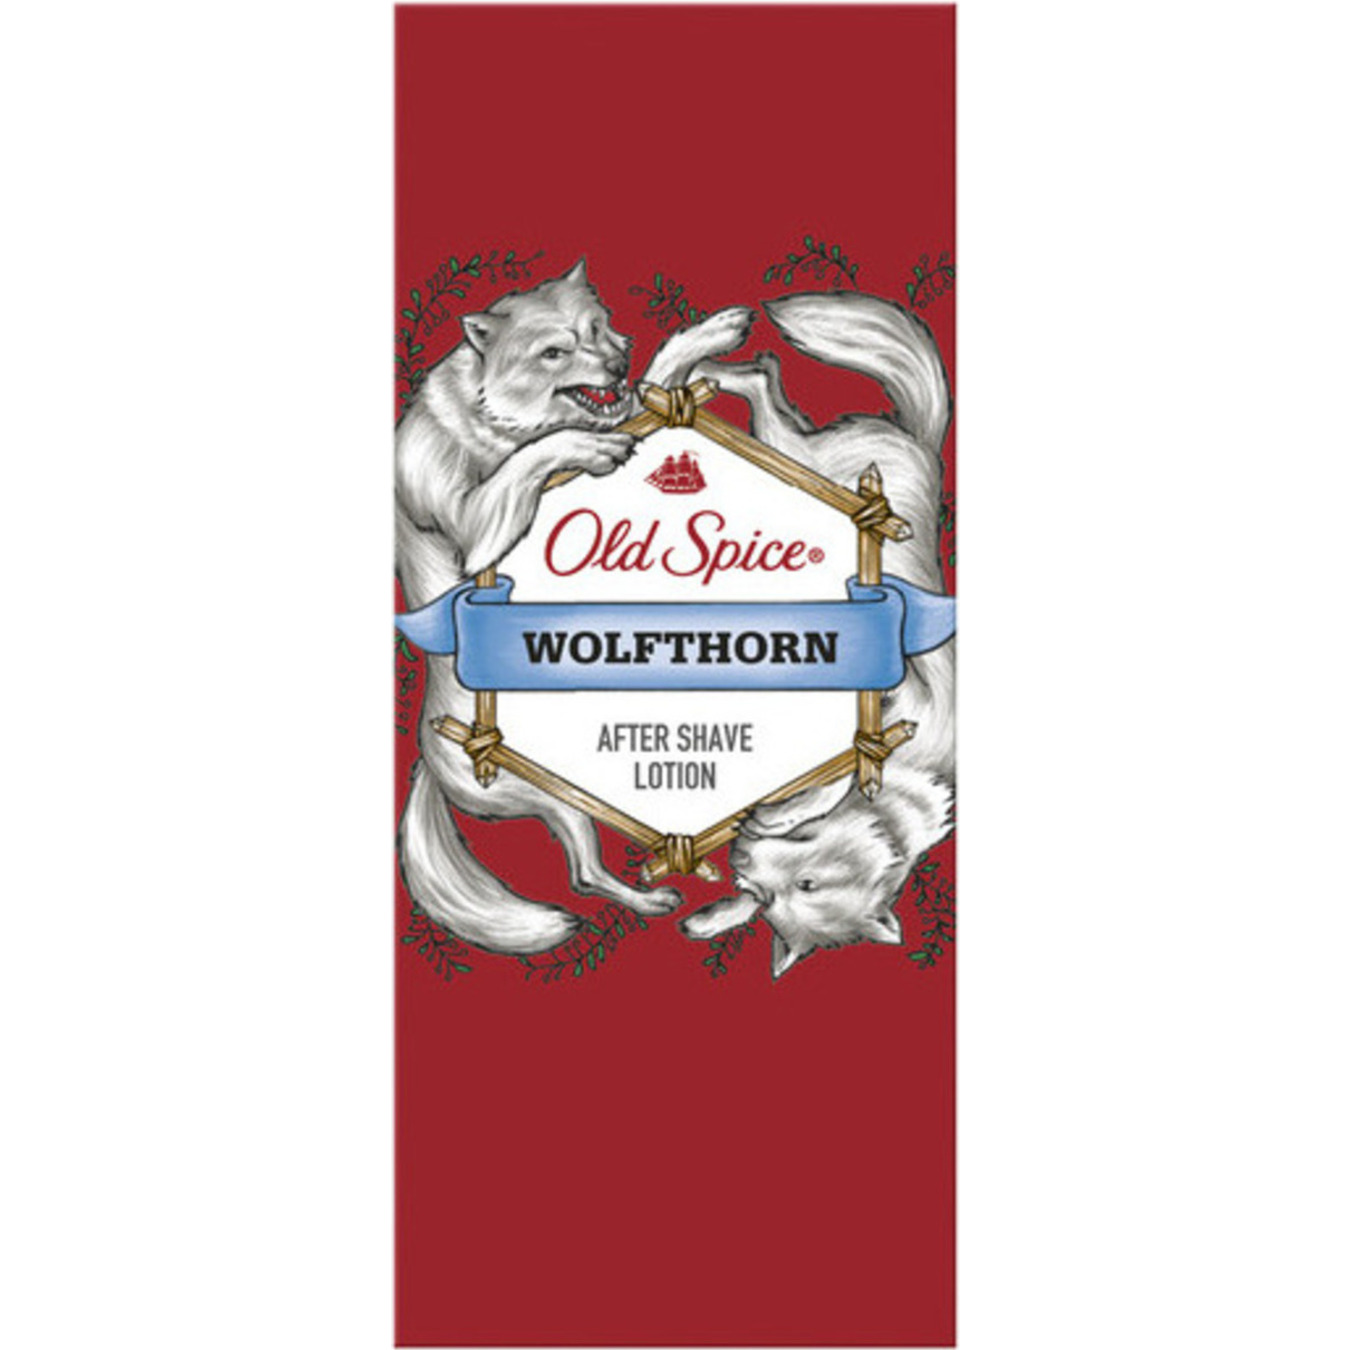 Лосьйон Old Spice Wolfthorn після гоління 100мл